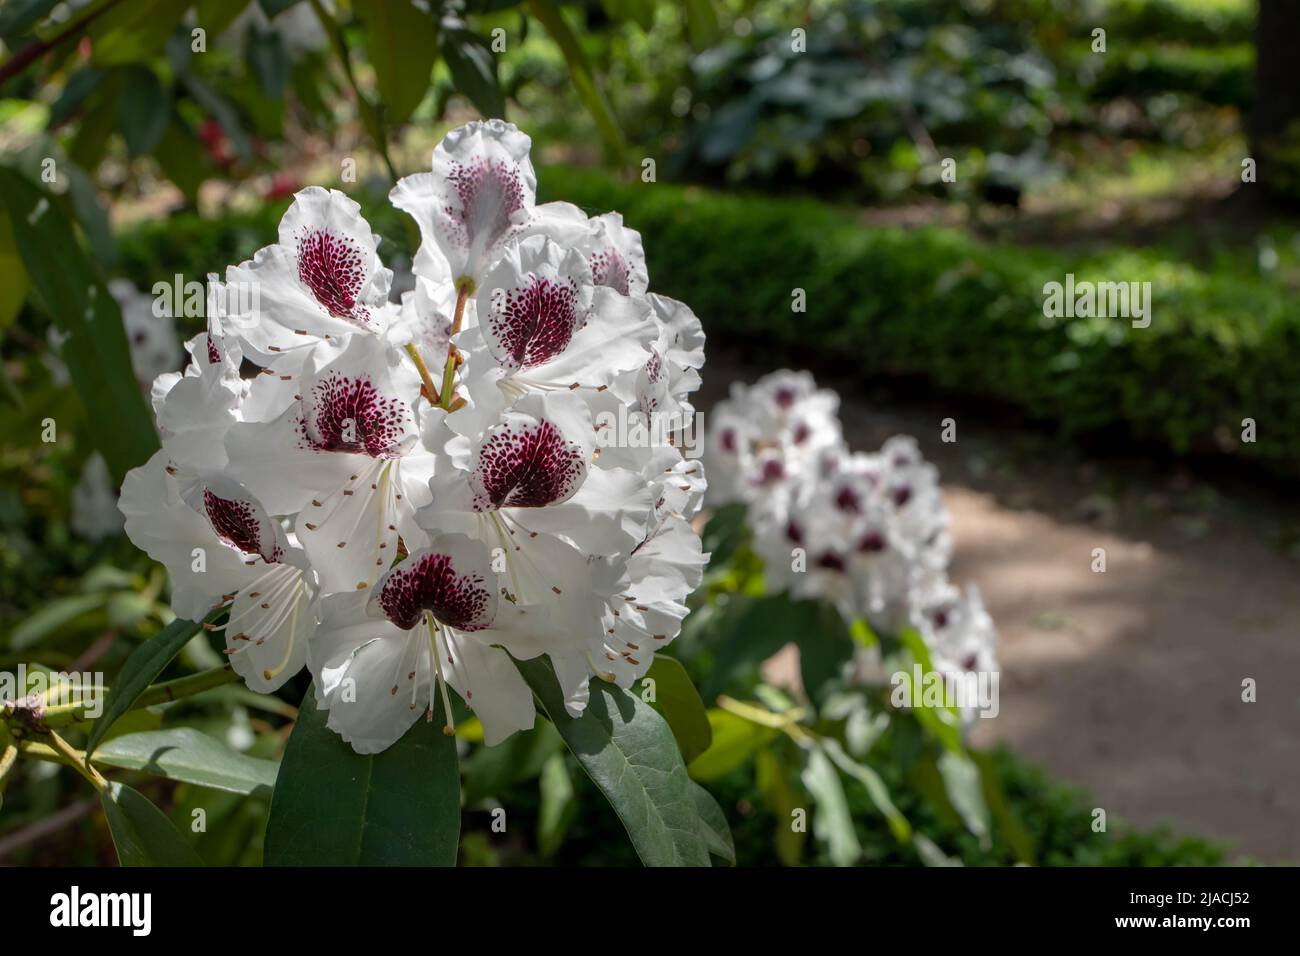 Pianta di Rhododendron con fiori bianchi ricoperti di macchie viola scuro nel giardino ornamentale Foto Stock